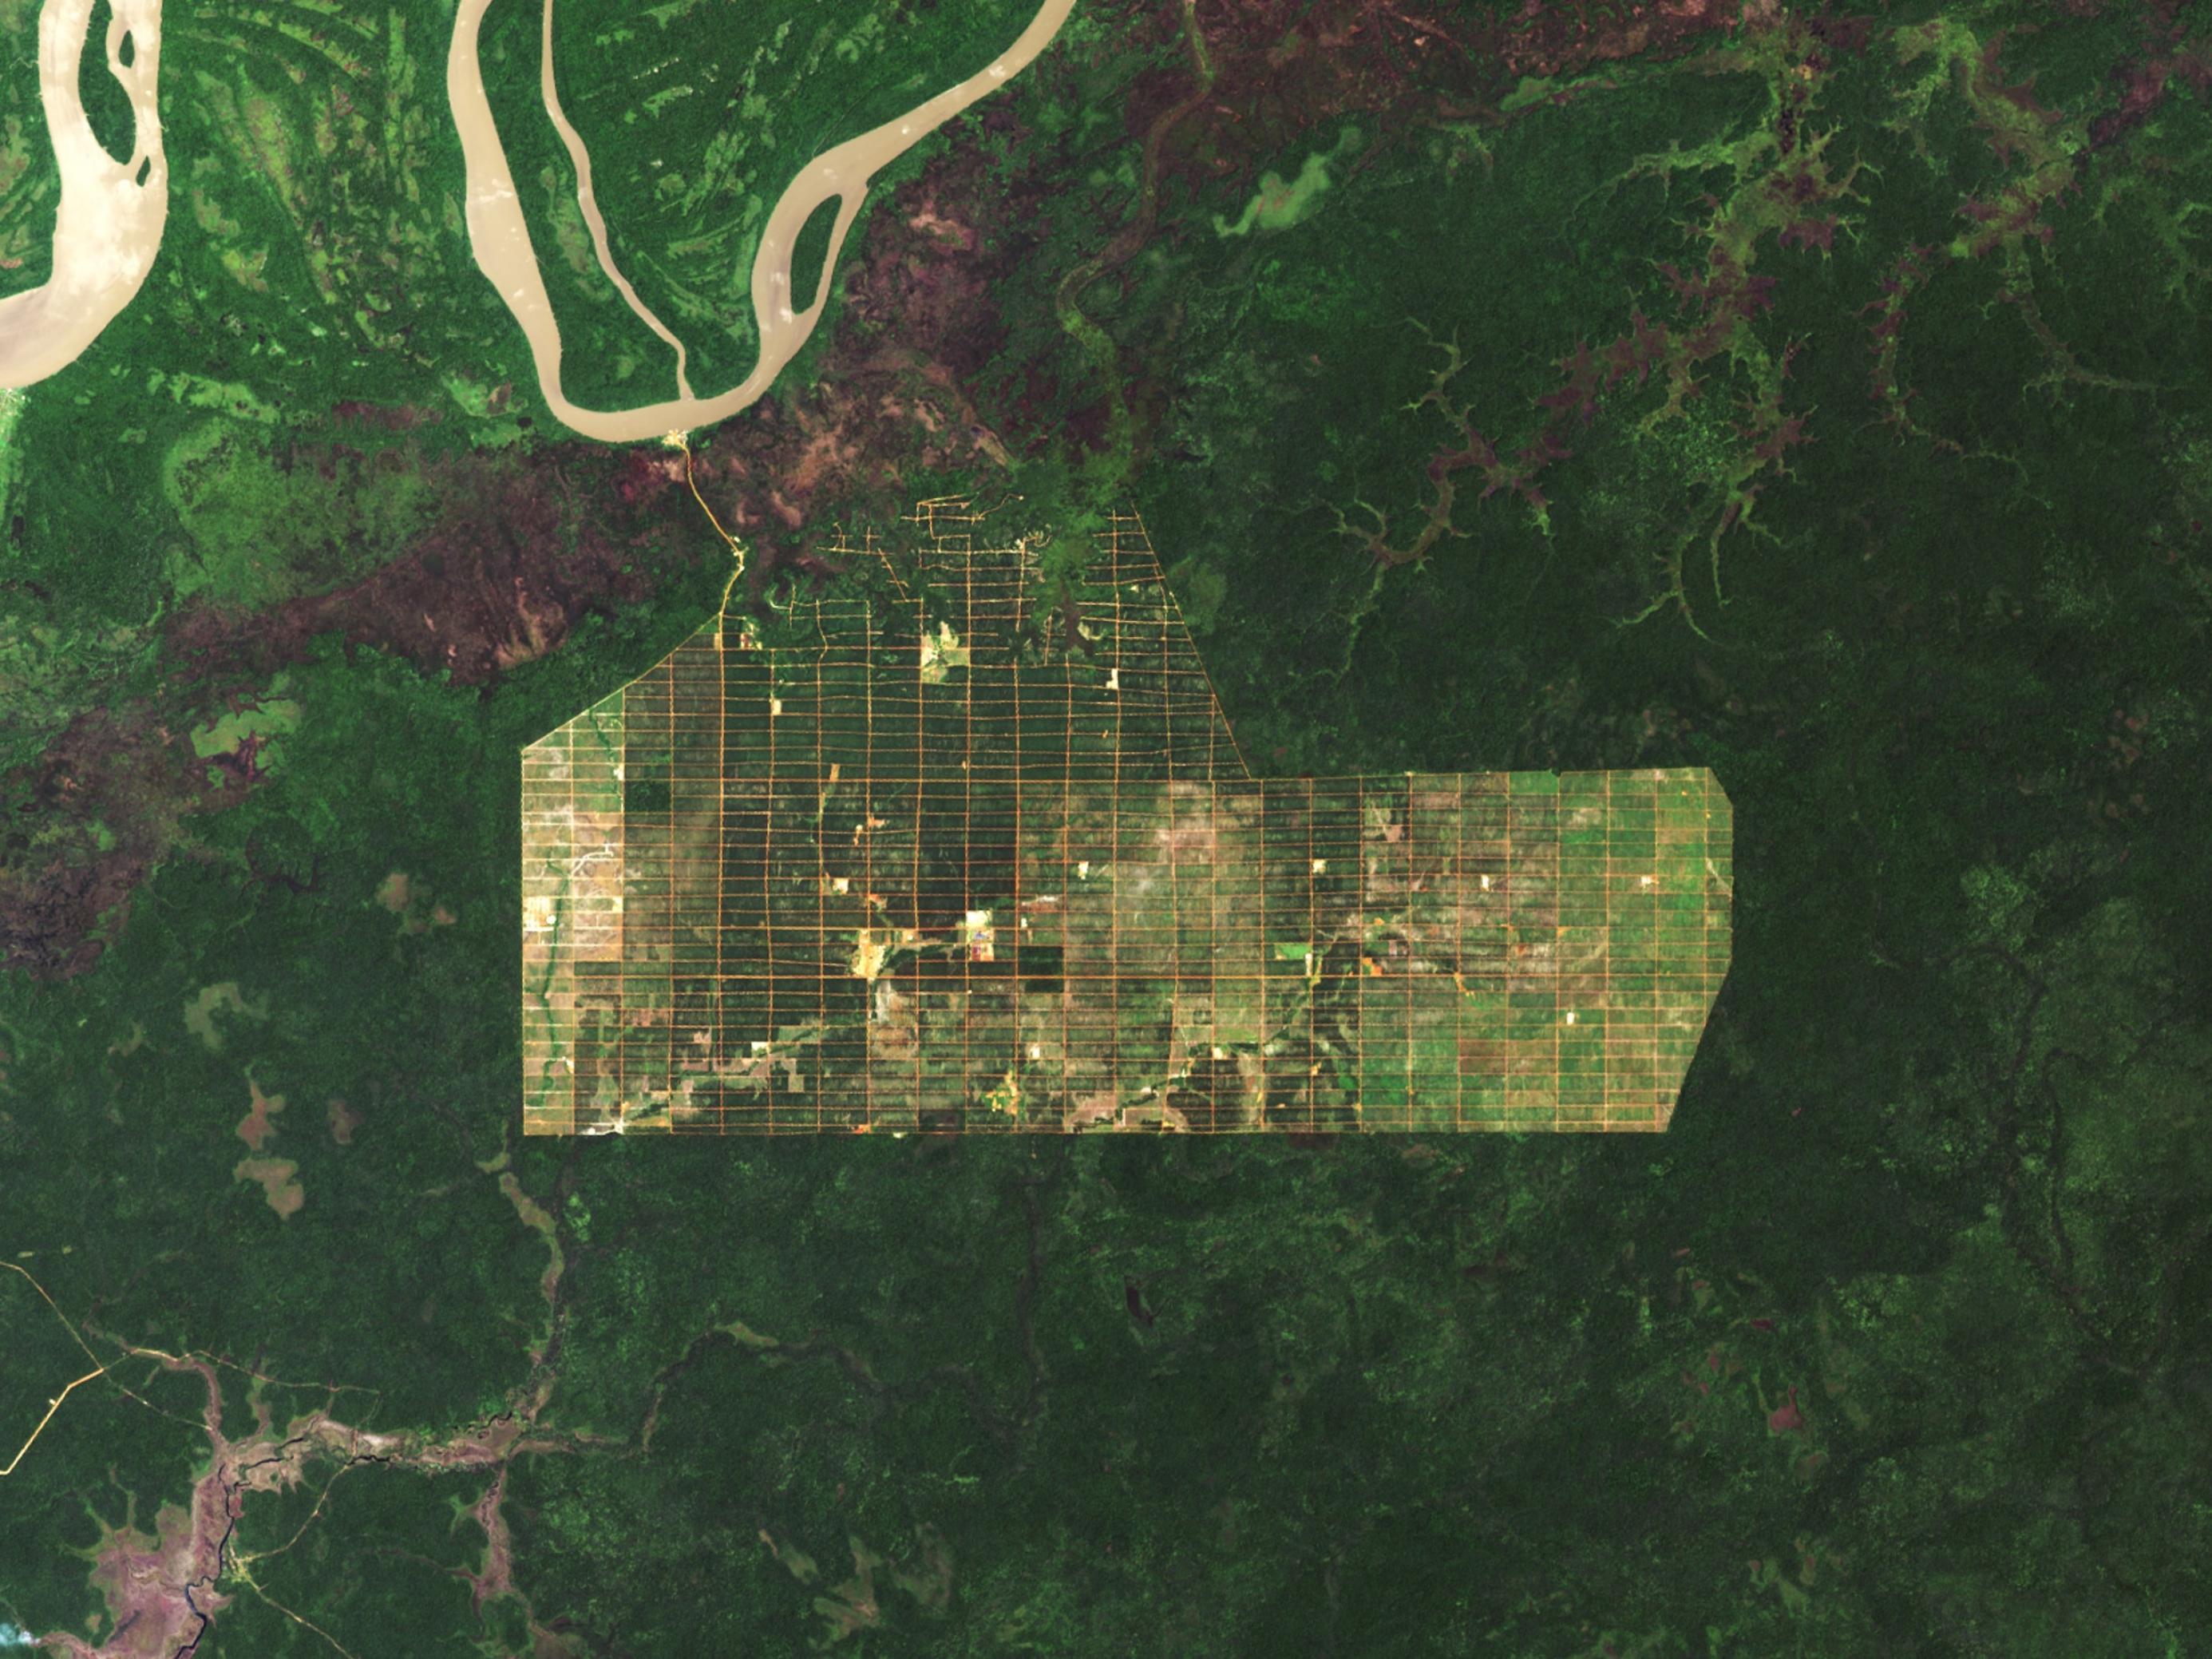 Das Satellitenbild zeigt eine grüne Regenwald-Landschaft samt Fluss, in deren Mitte eine Plantage angelegt wurde, die in Quadrate zerteilt ist.